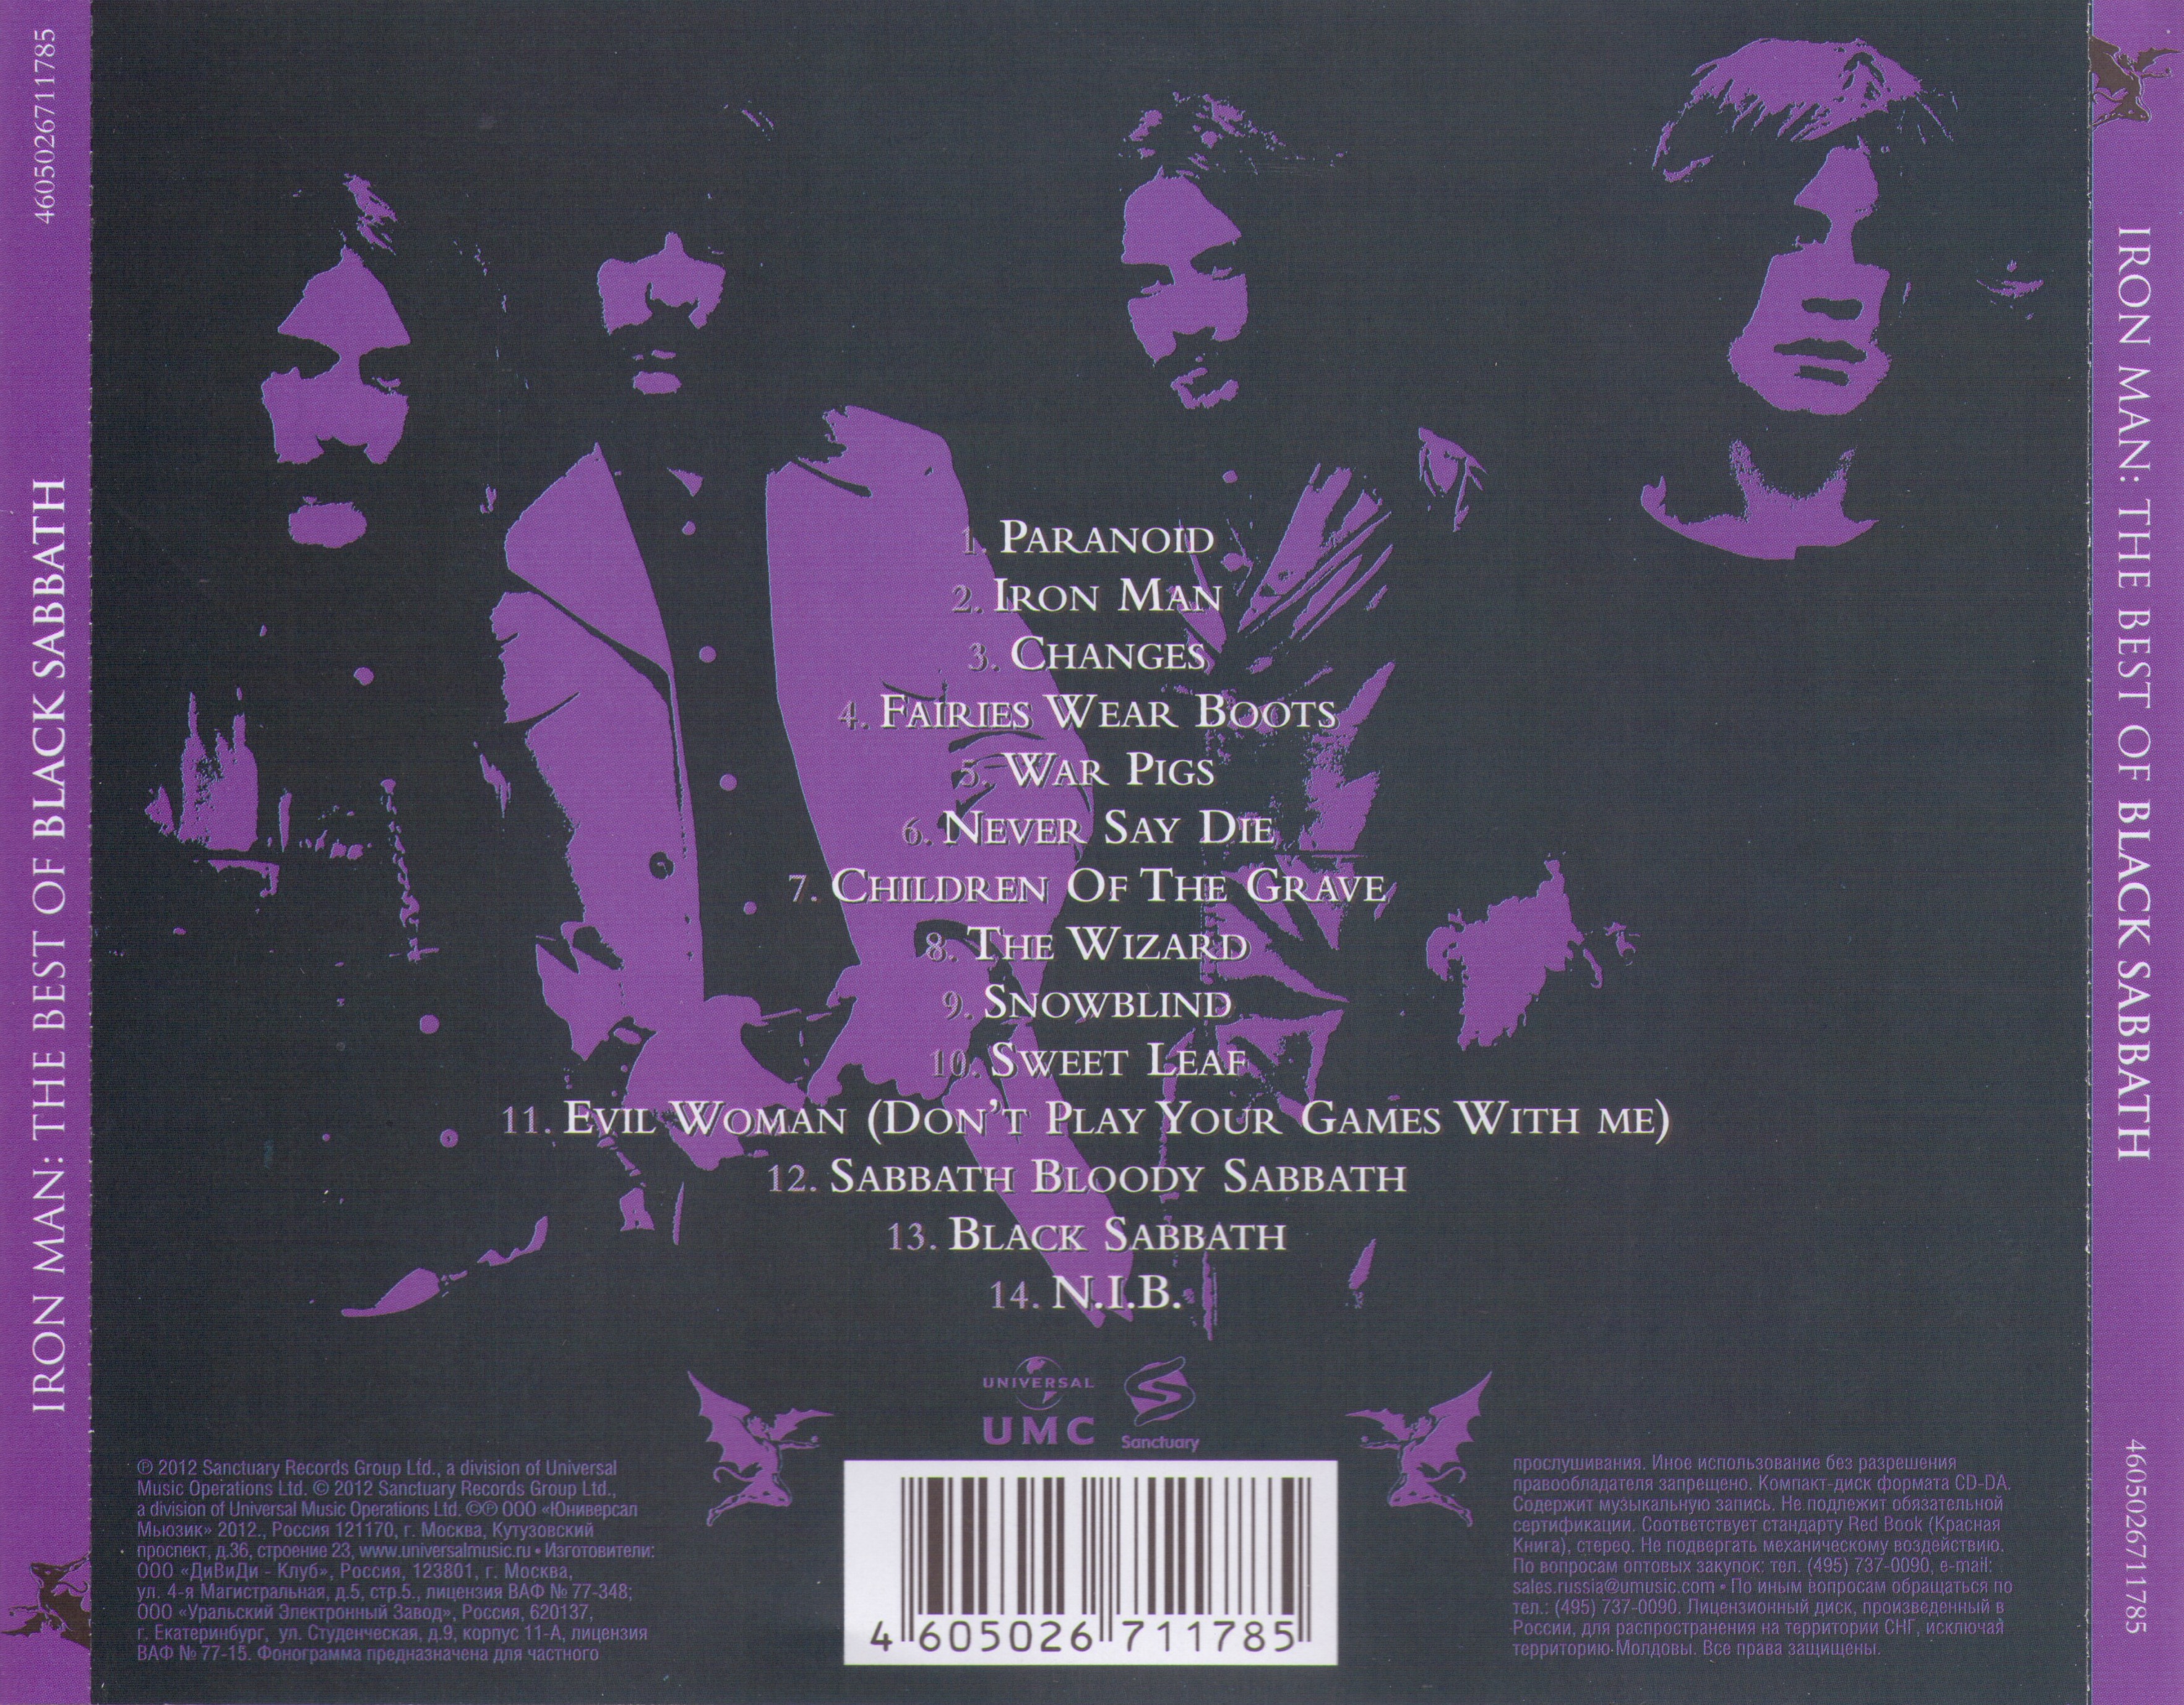 Release “Iron Man: The Best of Black Sabbath” by Black Sabbath 